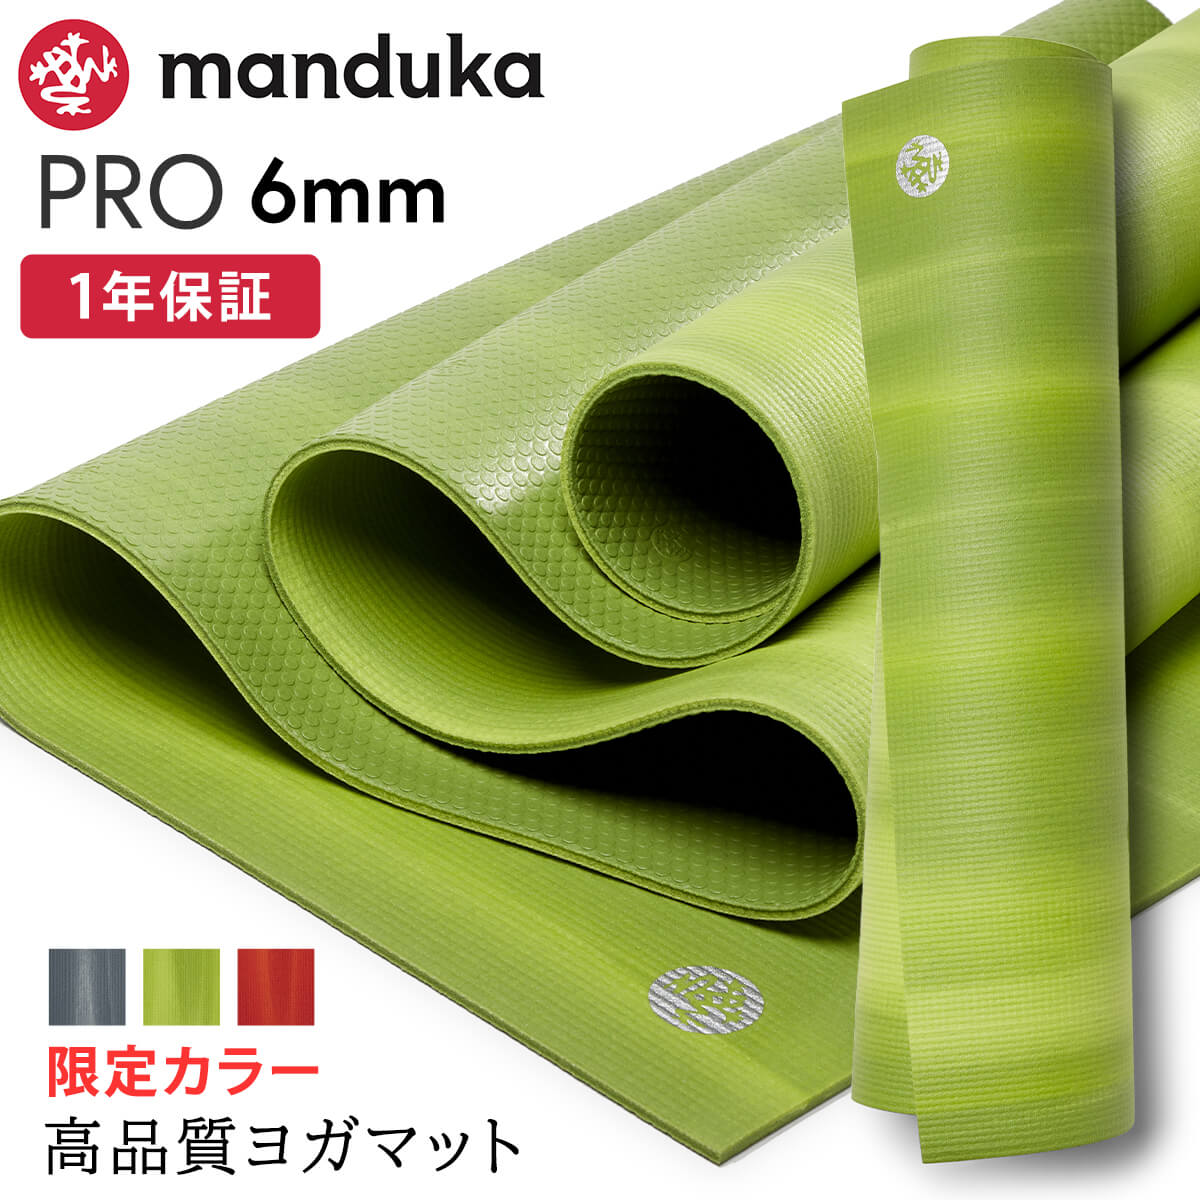 マンドゥカ Manduka ヨガマット プロ 6mm 《1年保証》  日本正規品 | PRO Yoga Mat Limited 最高級 24SS 筋トレ トレーニング ピラティス エコ 幅広大きい 大判 防音 「TR」001 RVPA